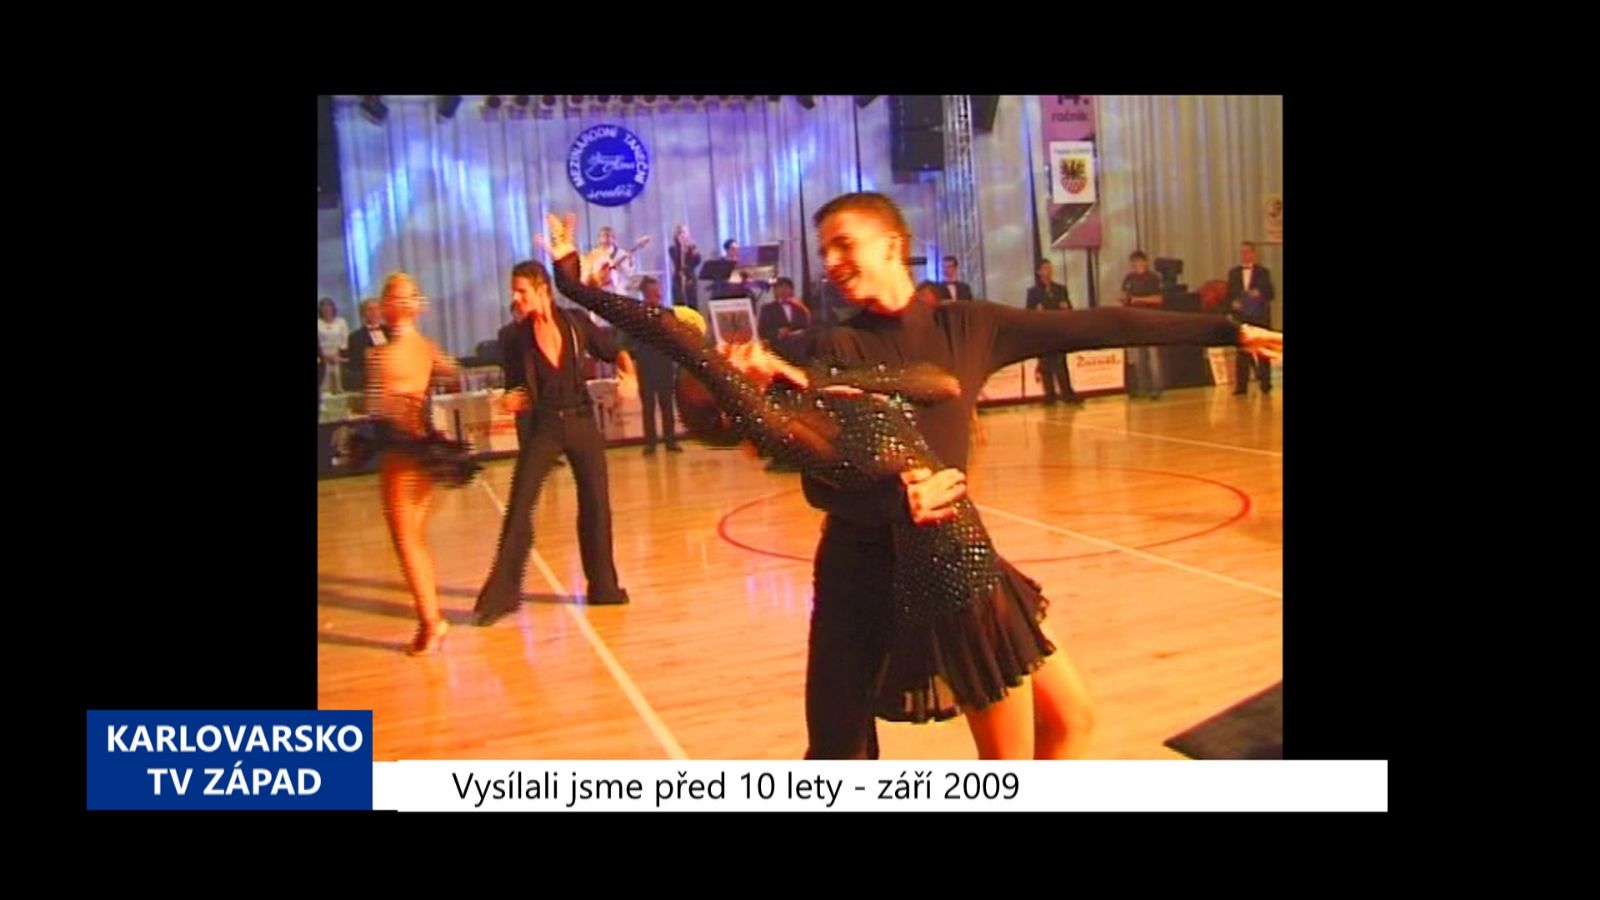 2009 – Cheb: Taneční klub oslaví 50 let (3829) (TV Západ)